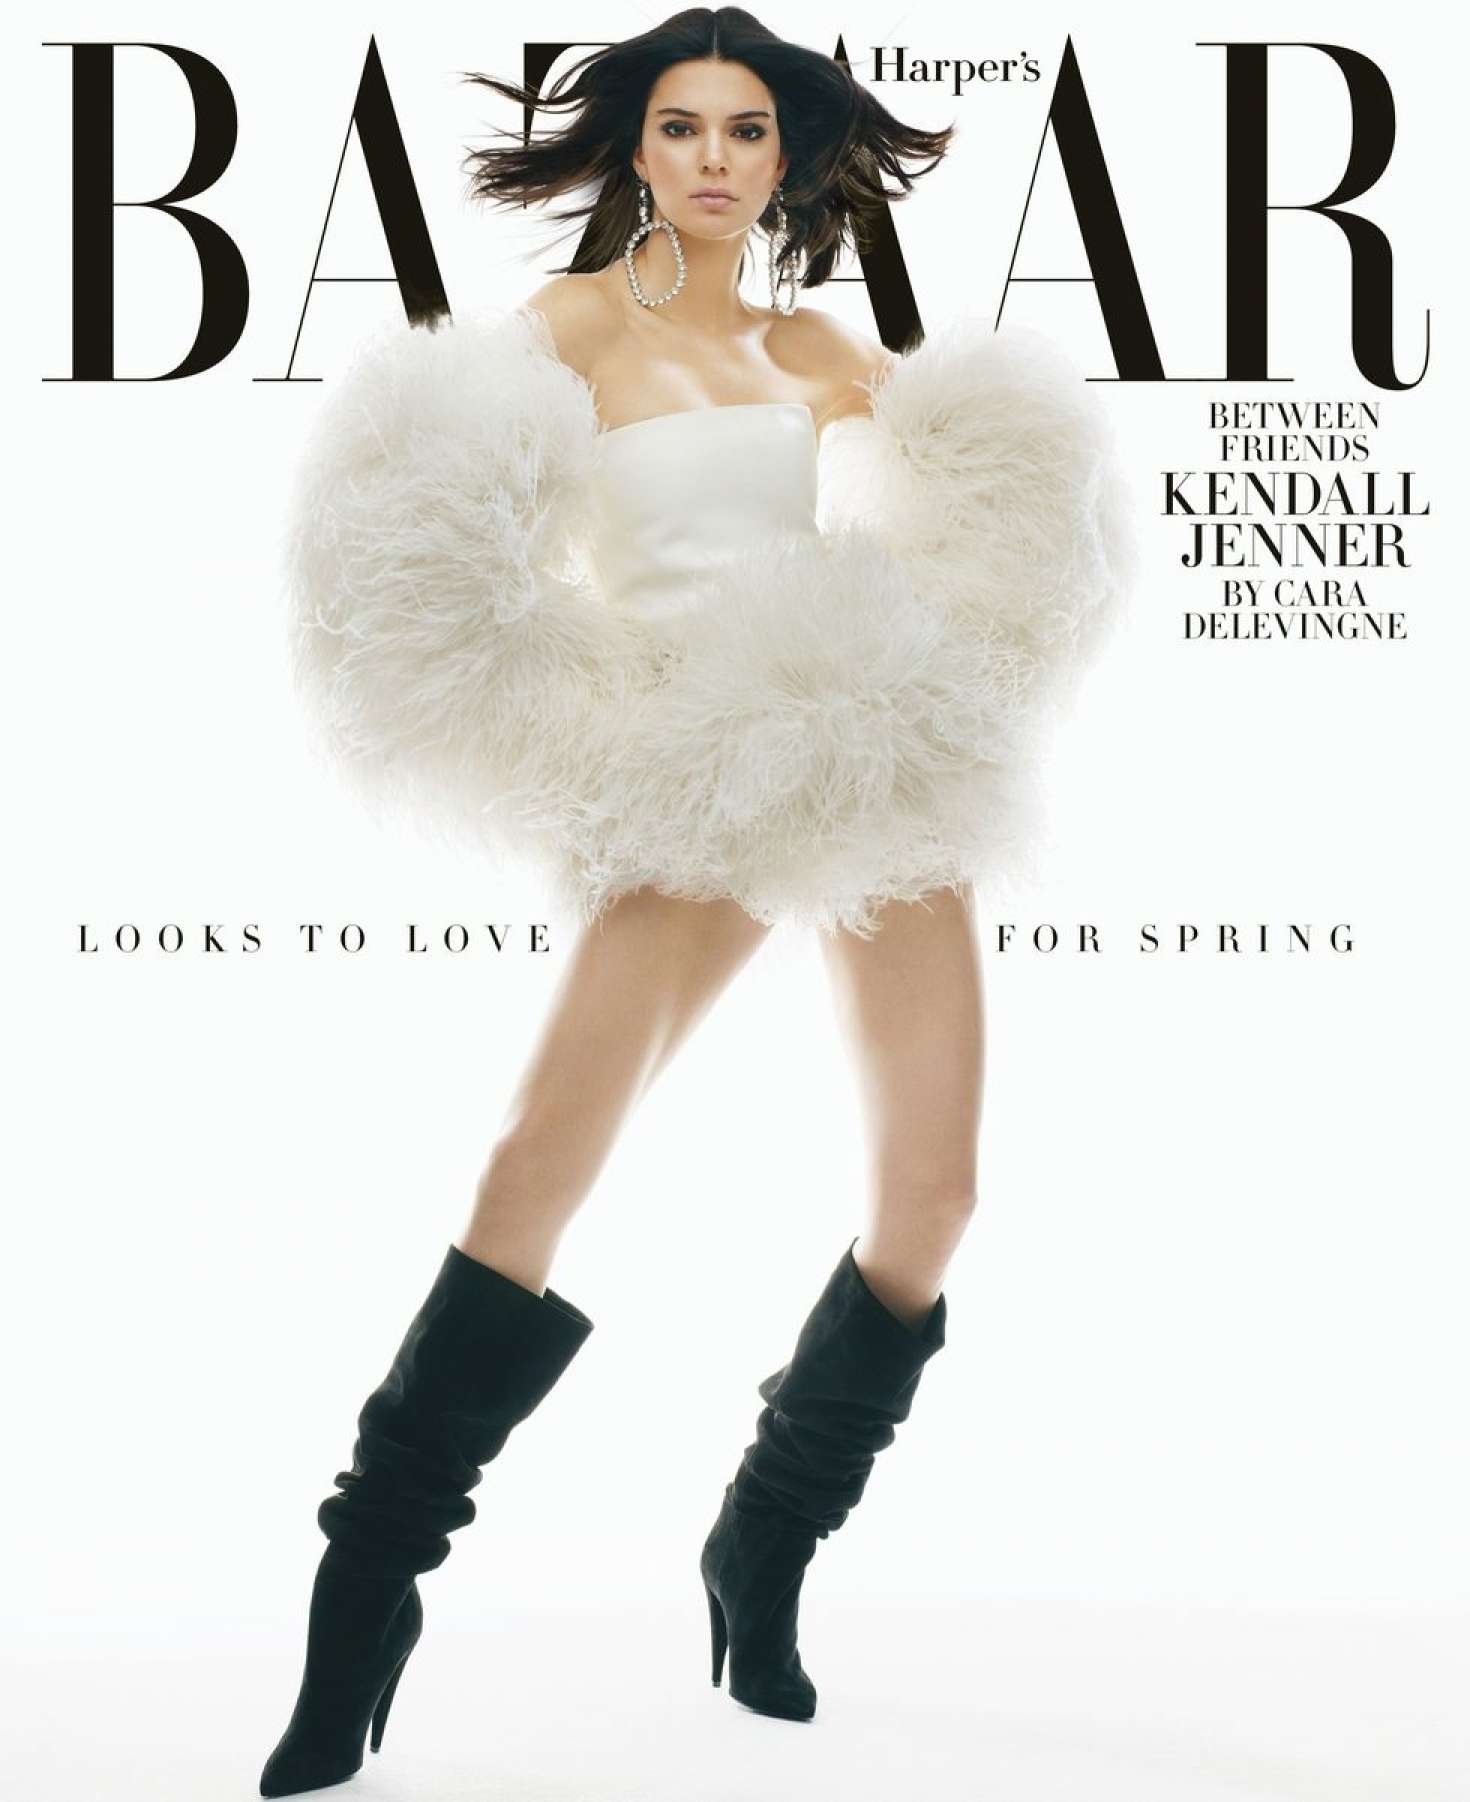 Kendall Jenner in Harper's Bazaar Magazine (February 2018)